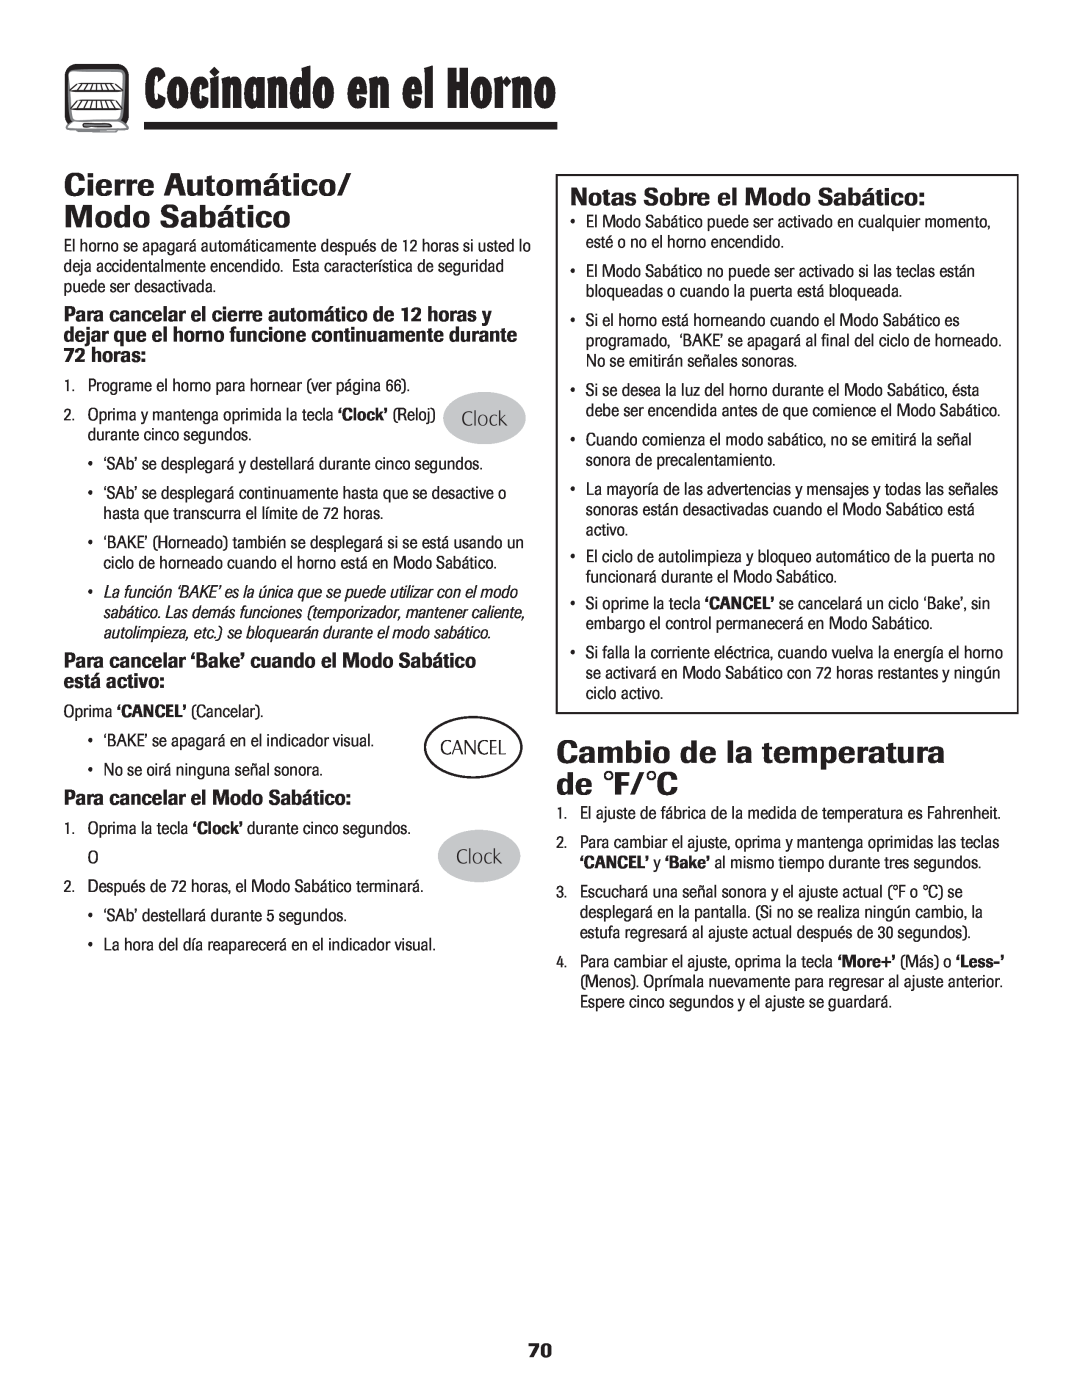 Maytag 700 manual Cierre Automático Modo Sabático, Cambio de la temperatura de F/C, Notas Sobre el Modo Sabático, horas 